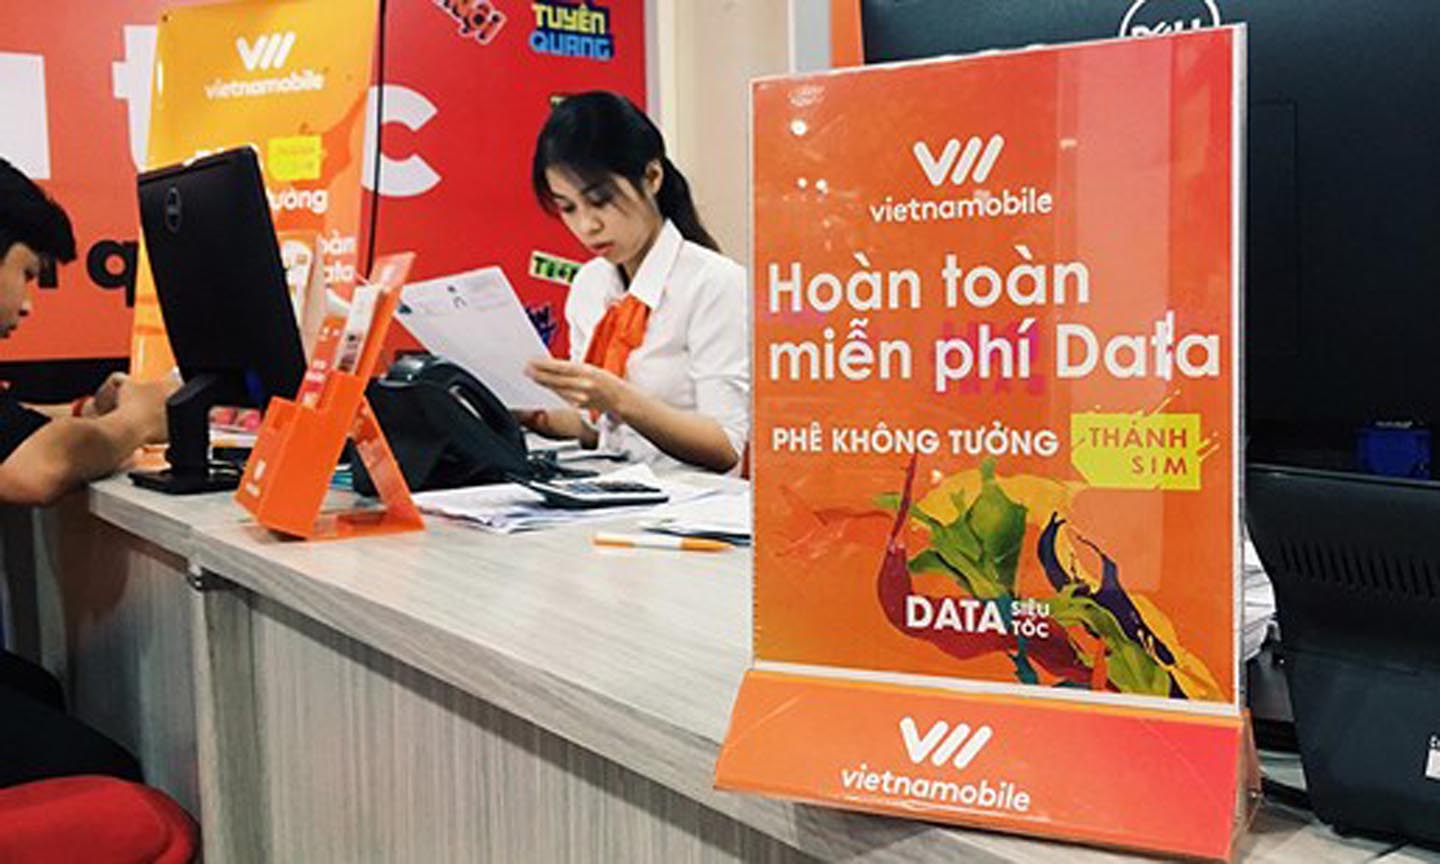  Sau 12 năm có mặt ở thị trường Việt Nam, mạng di động Vietnamobile chỉ chiếm được thị phần rất khiêm tốn và gặp vô vàn khó khăn trong kinh doanh